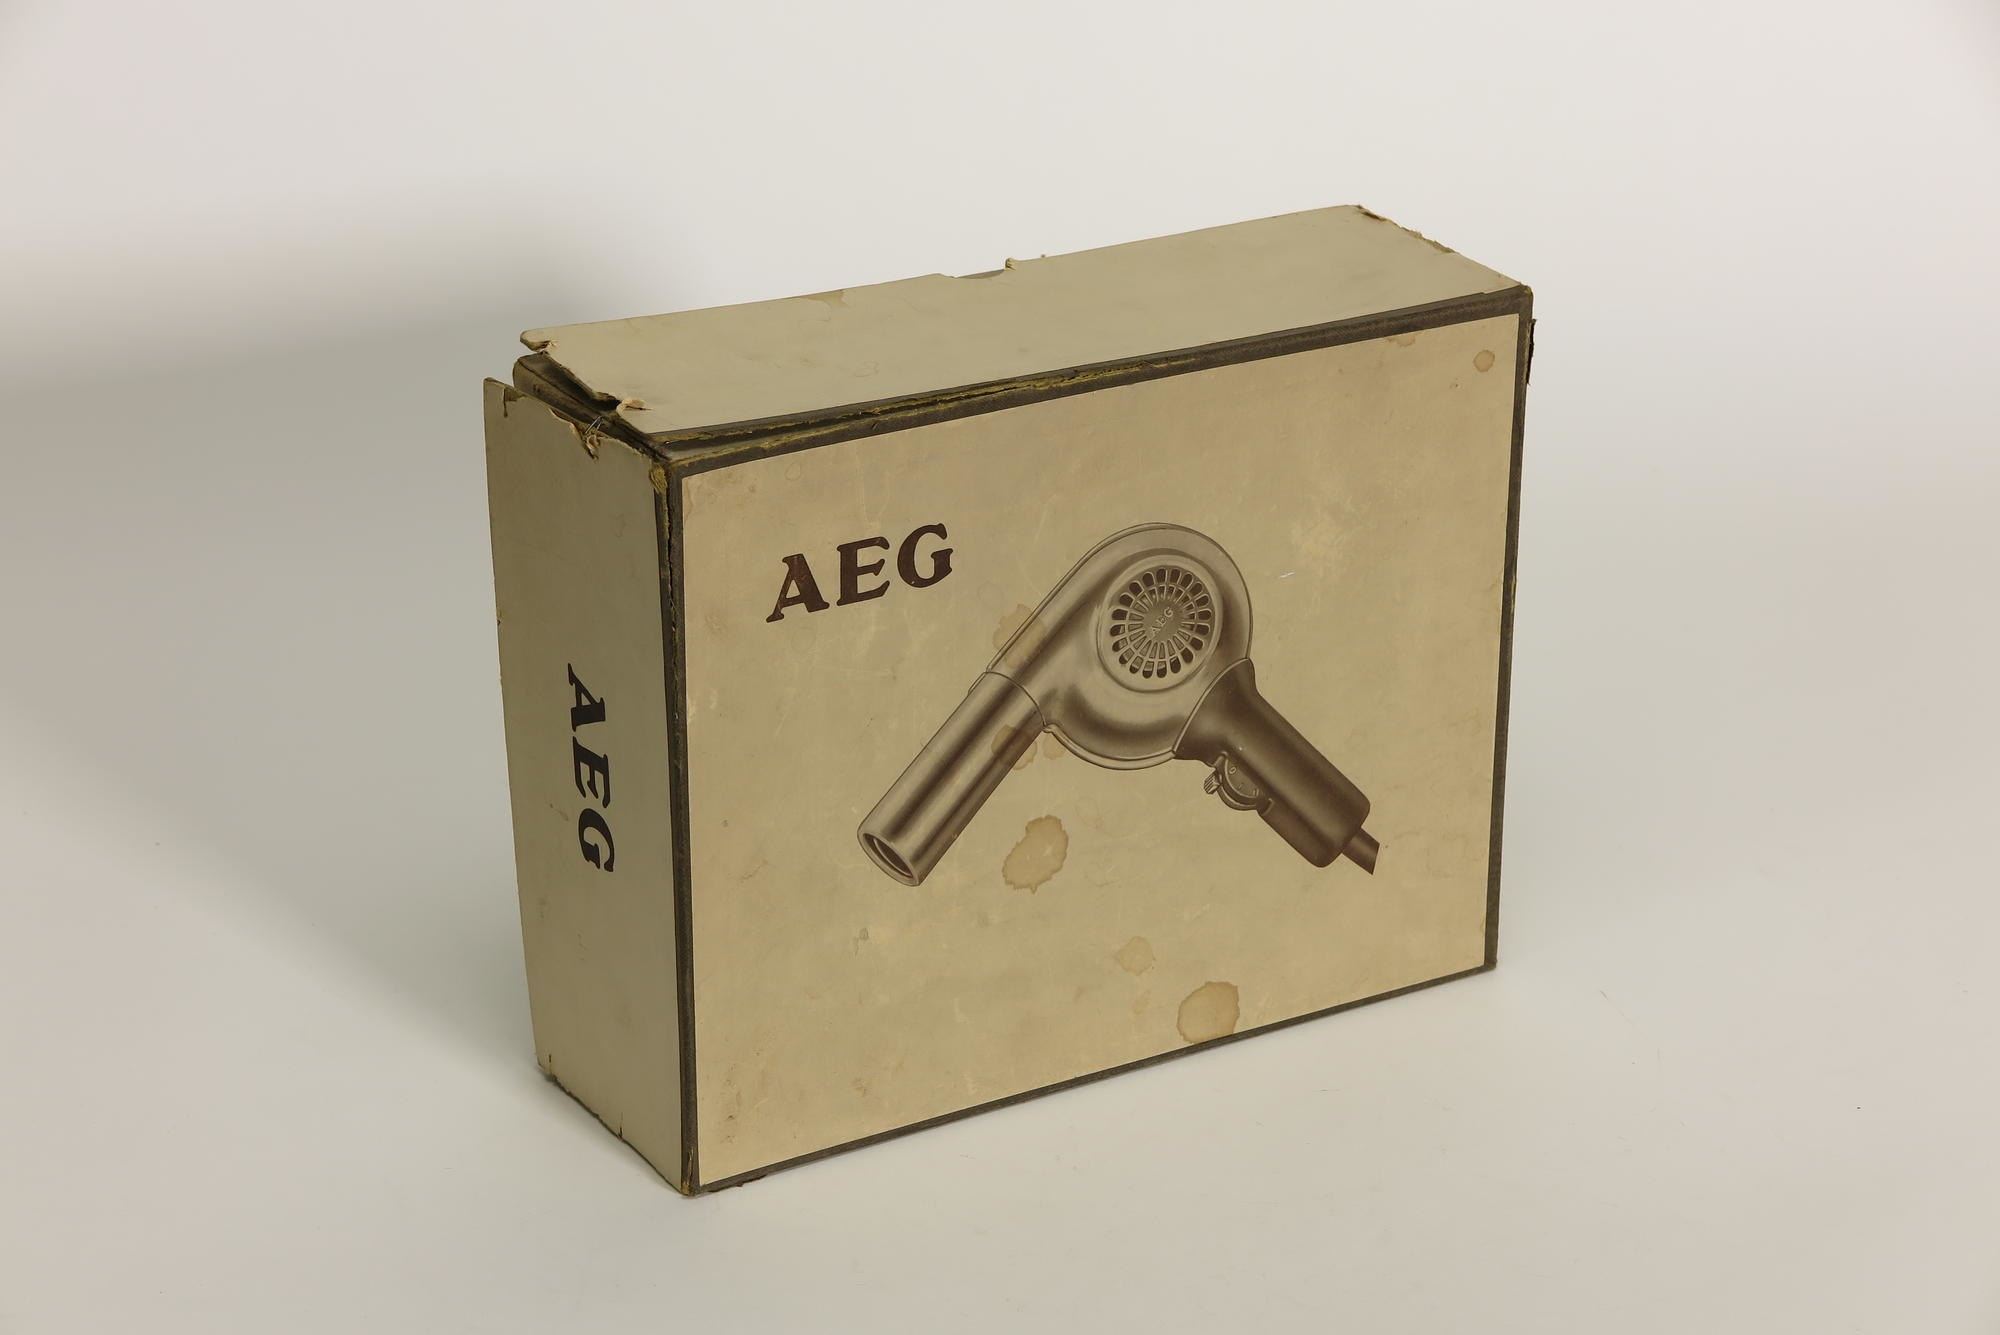 Verpackungskarton, Zubehör zu Elektrischer Haartrockner AEG (Stiftung Deutsches Technikmuseum Berlin CC0)